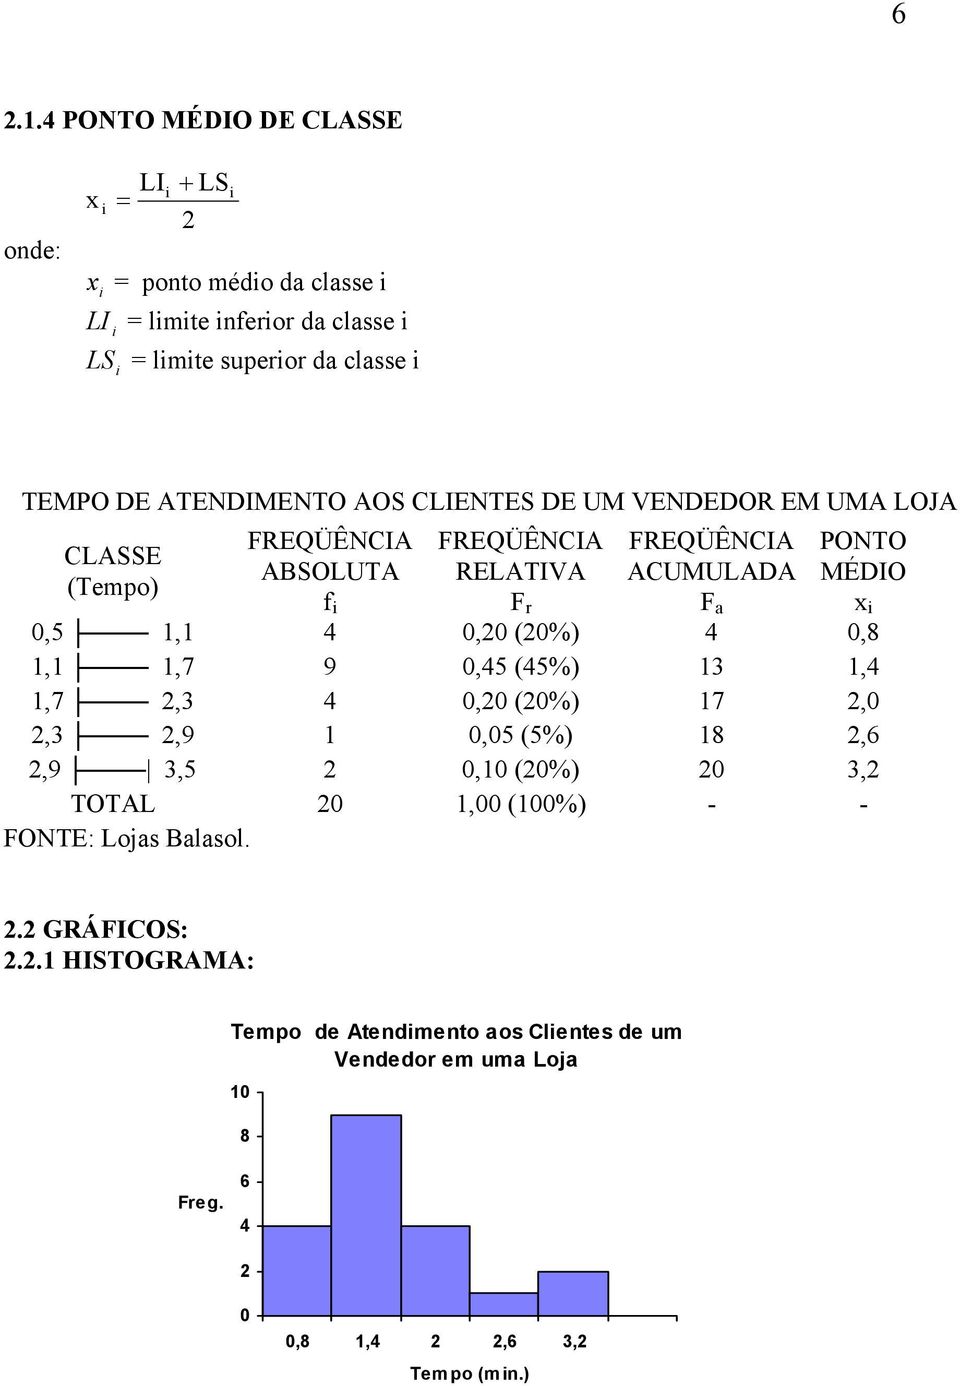 F a PONTO MÉDIO x 0,5, 4 0,0 (0%) 4 0,8,,7 9 0,45 (45%) 3,4,7,3 4 0,0 (0%) 7,0,3,9 0,05 (5%) 8,6,9 3,5 0,0 (0%) 0 3, TOTAL 0,00 (00%)